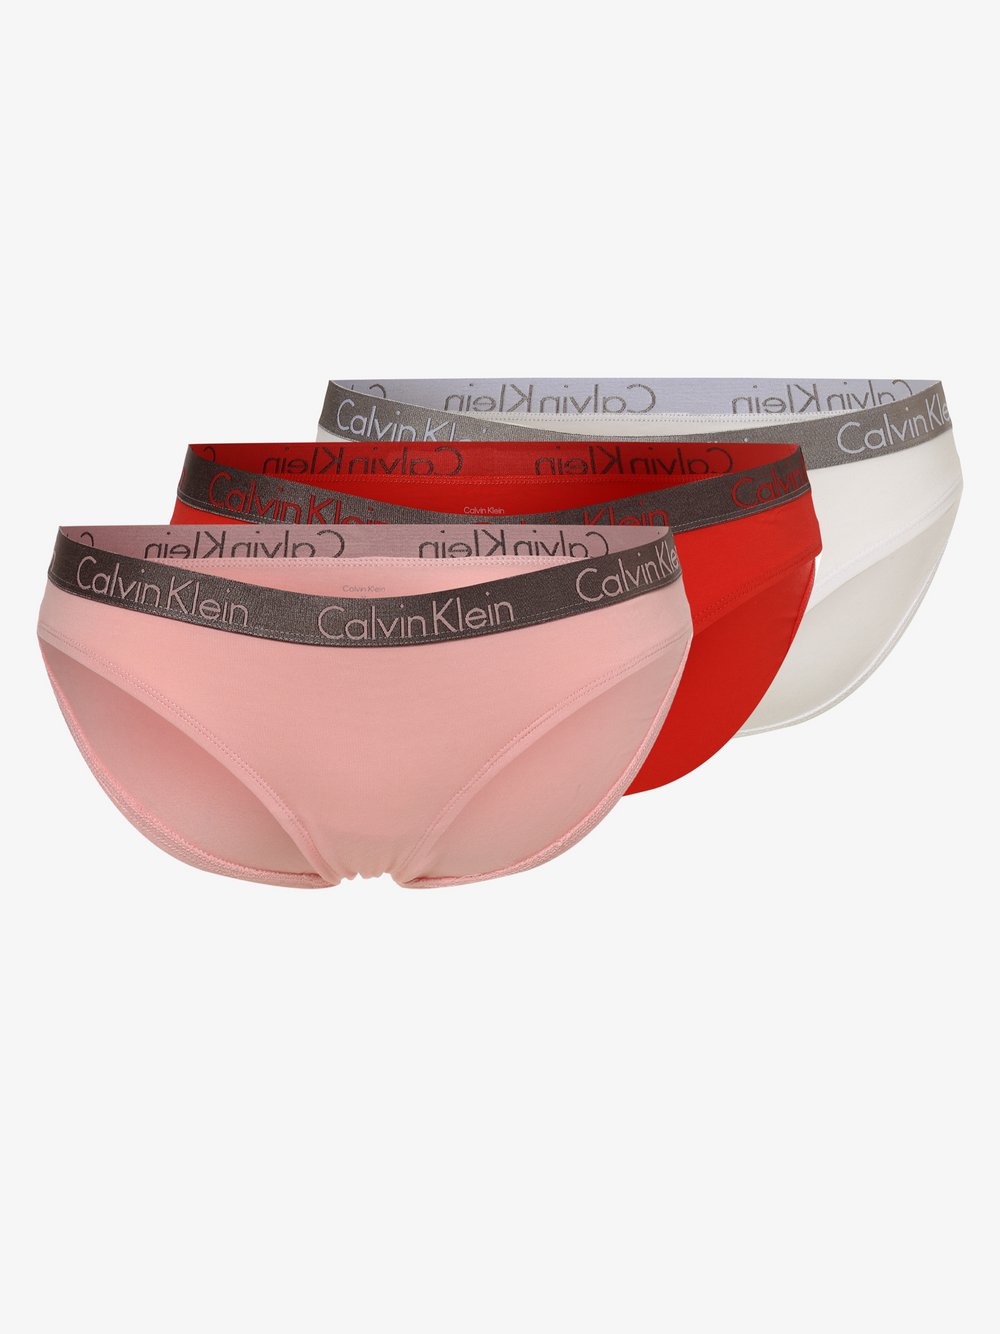 Calvin Klein - Figi damskie pakowane po 3 szt., różowy|czerwony|biały|wielokolorowy